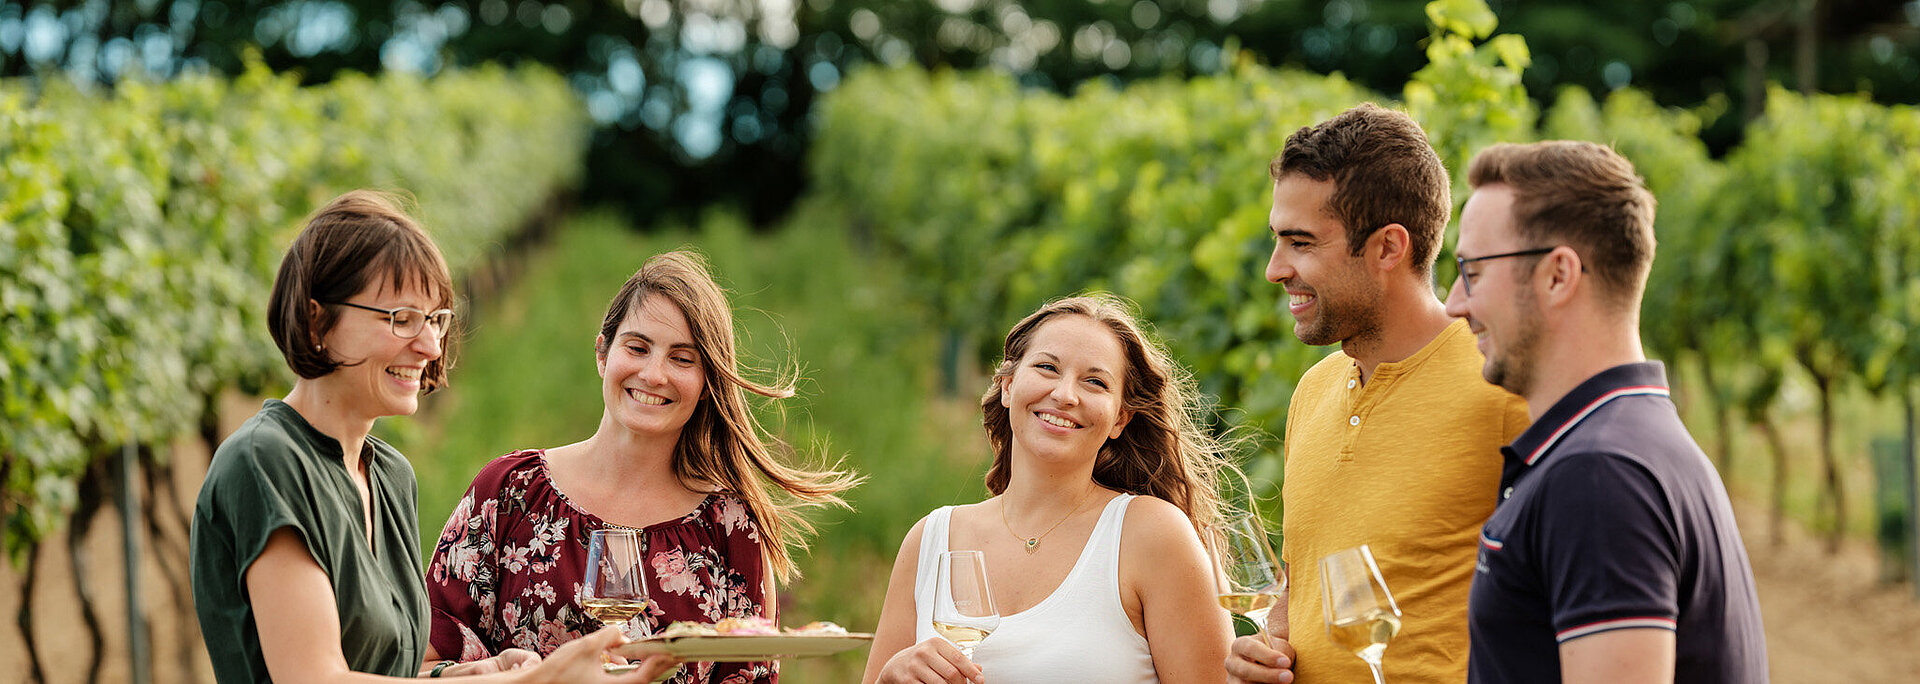 Eine Gruppe junger Menschen steht mit Monika Neustifter im Weingarten. Monika Neustifter bietet der Gruppe Brötchen und ein Glas Wein an.